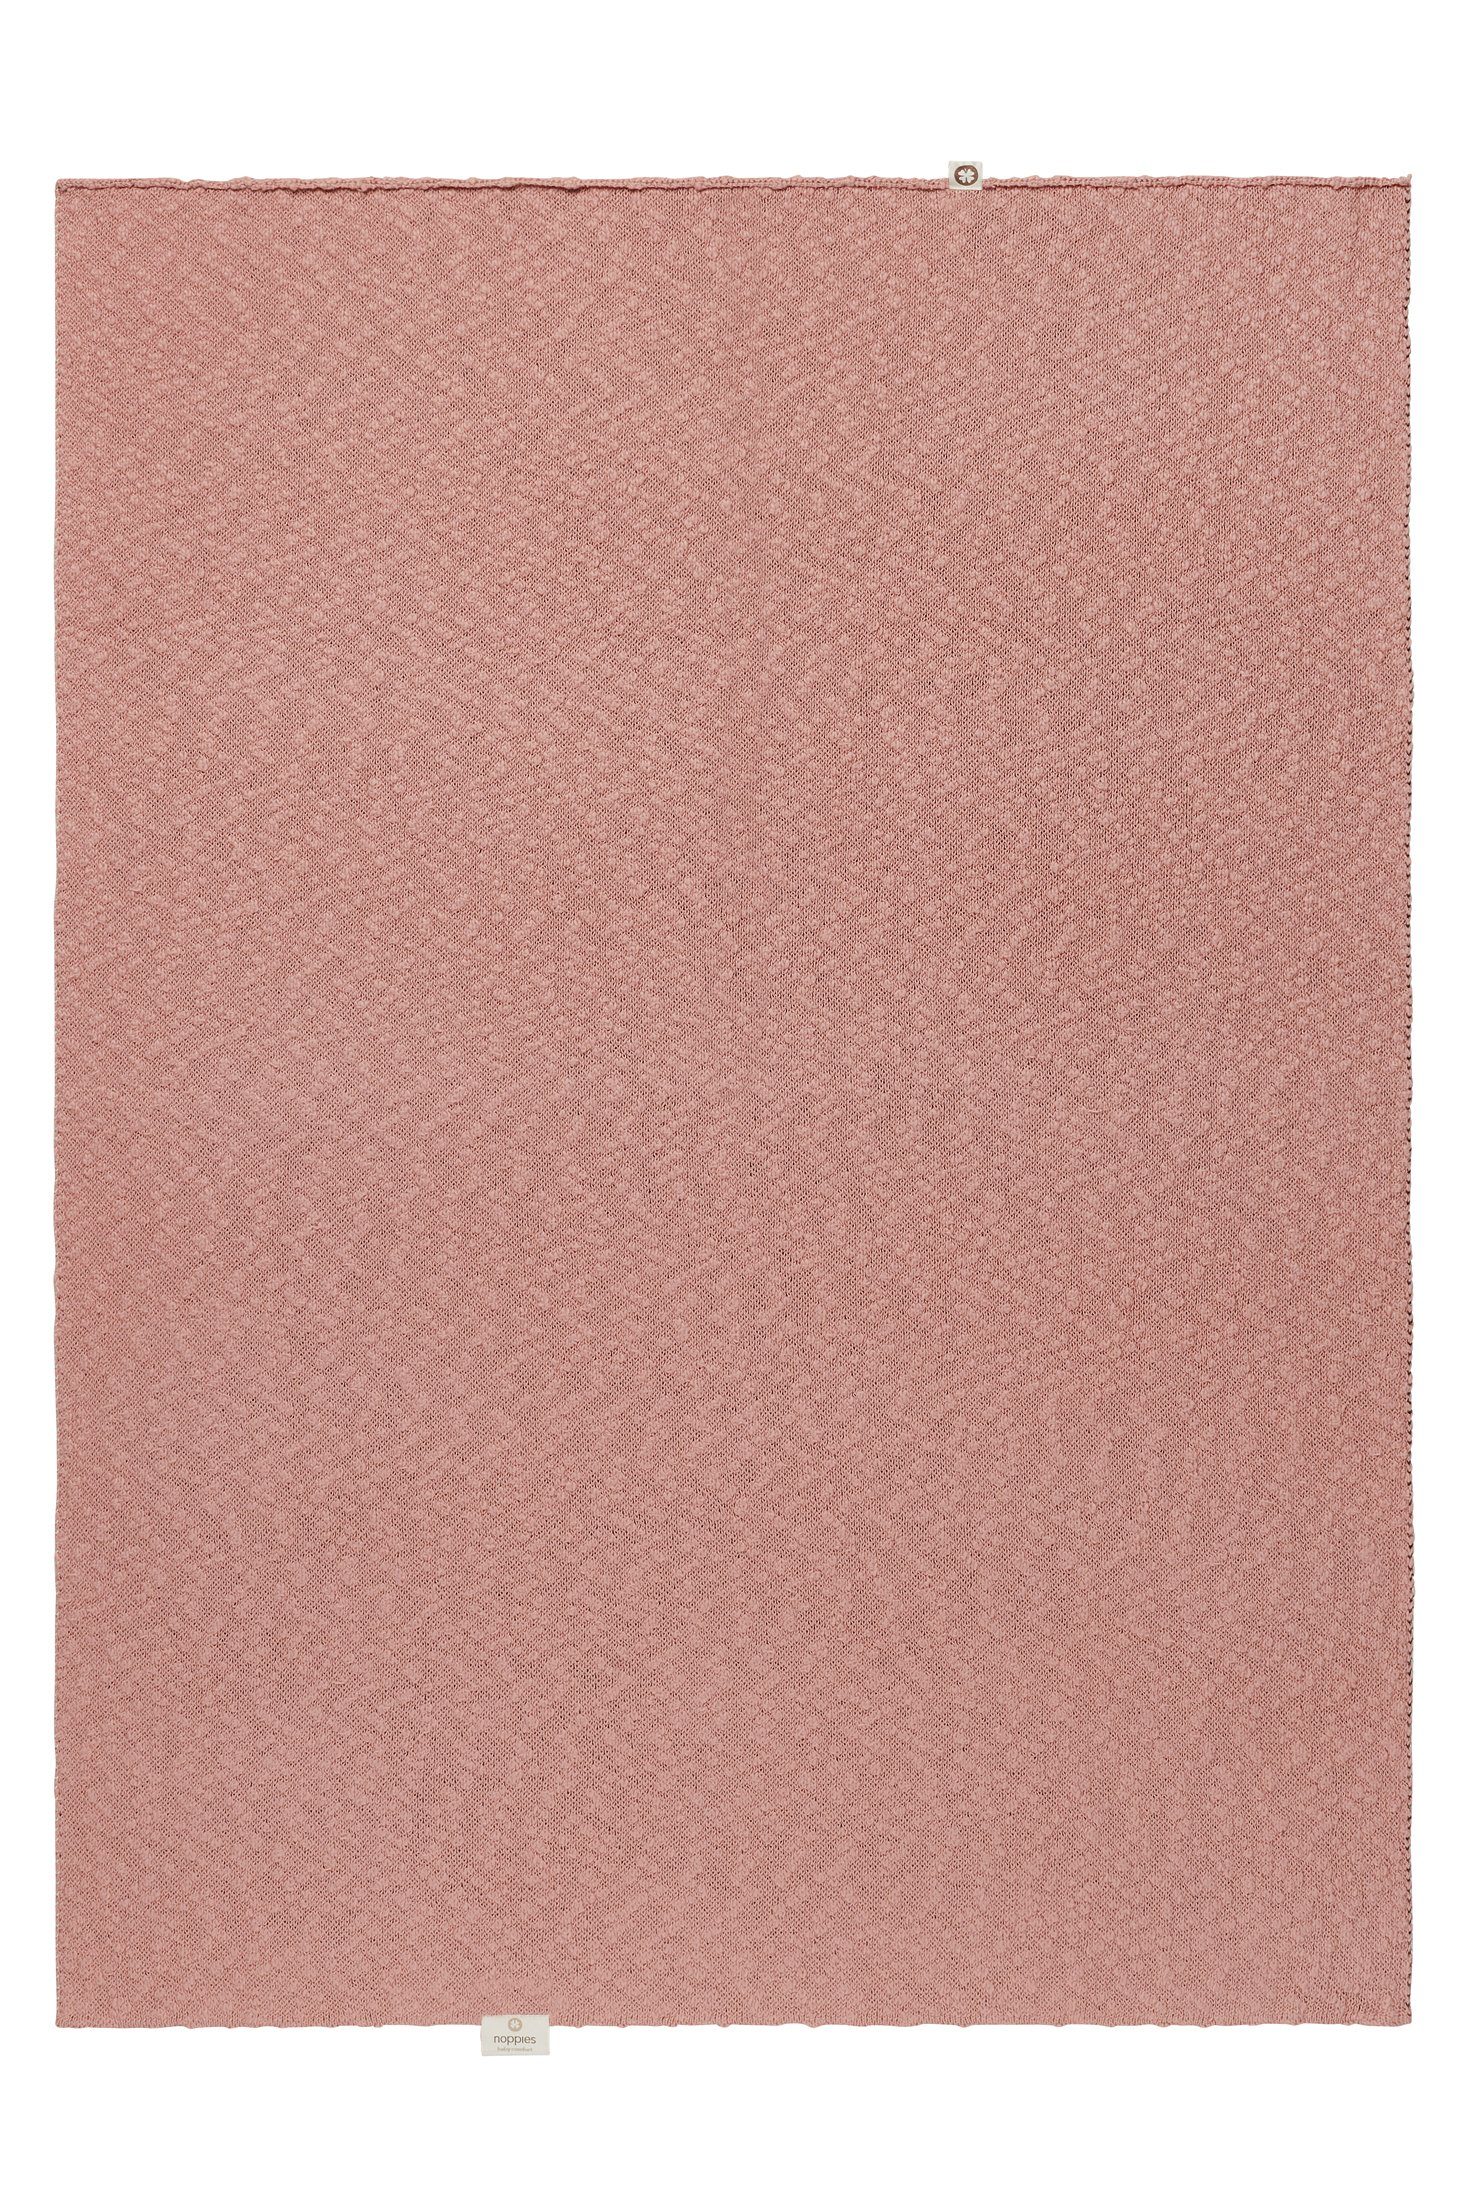 für Babydecke Wiege Rose die Noppies Noppies Melange cm, Decke Misty knit 75x100